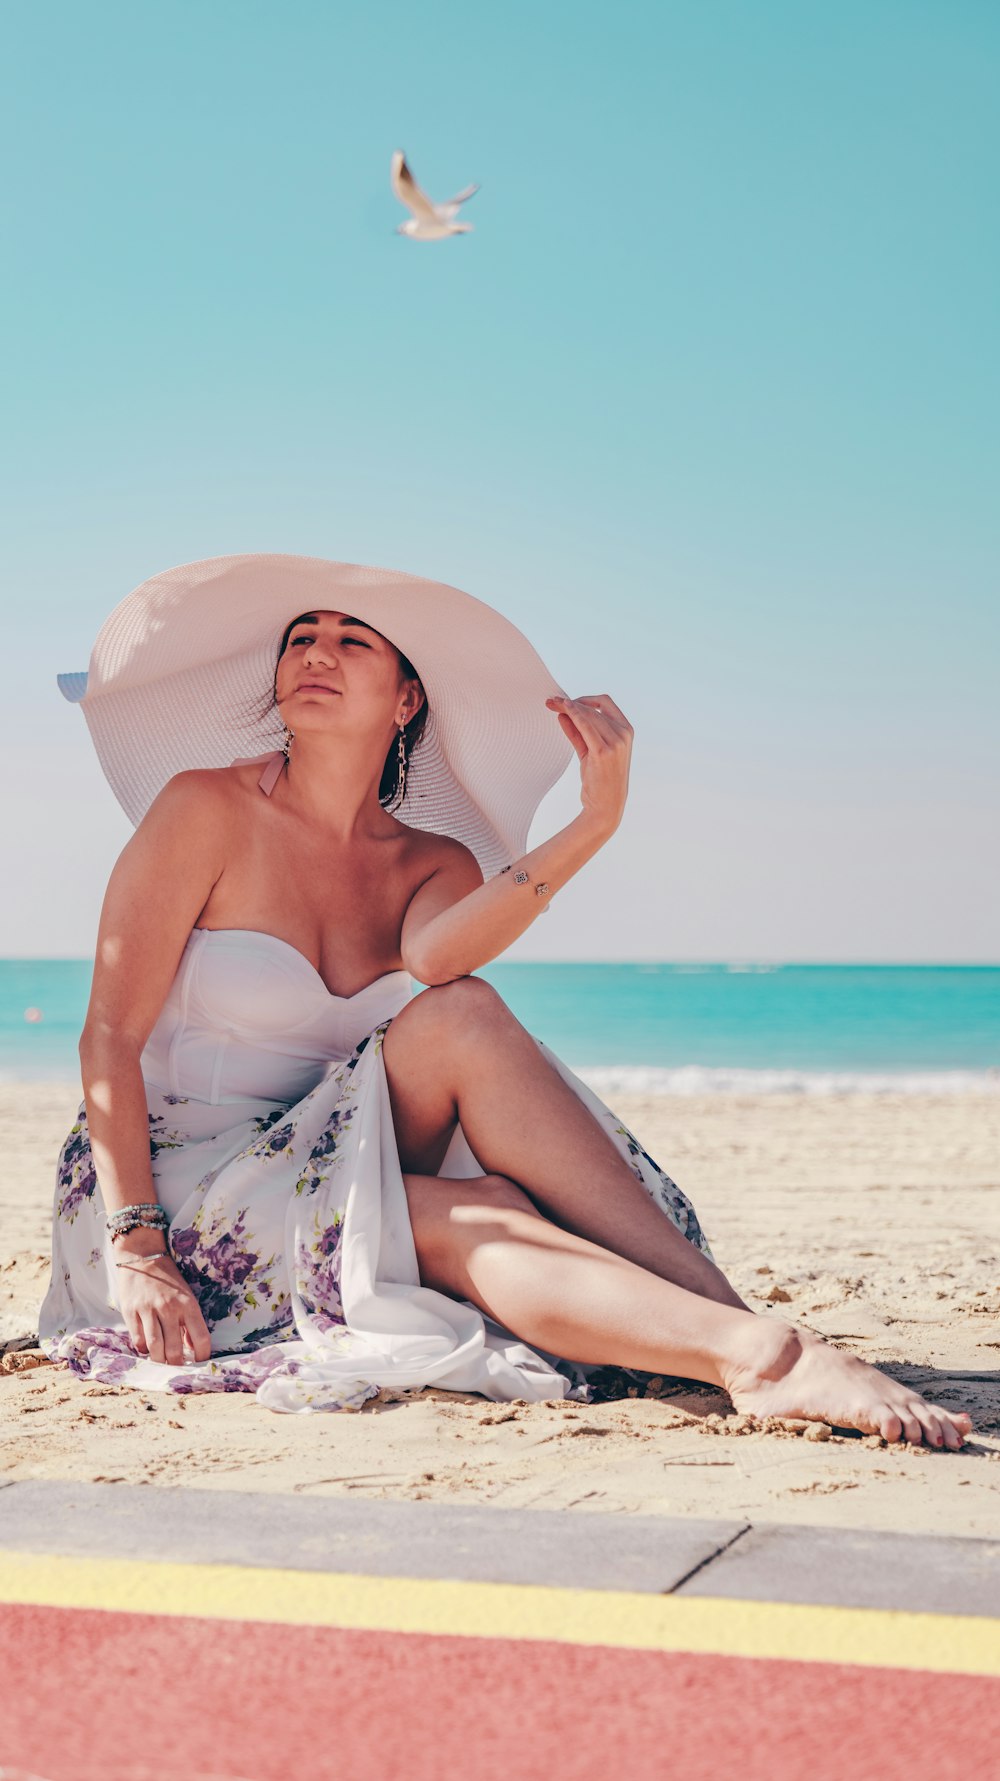 하얀 모자를 쓰고 해변에 앉아 있는 여자